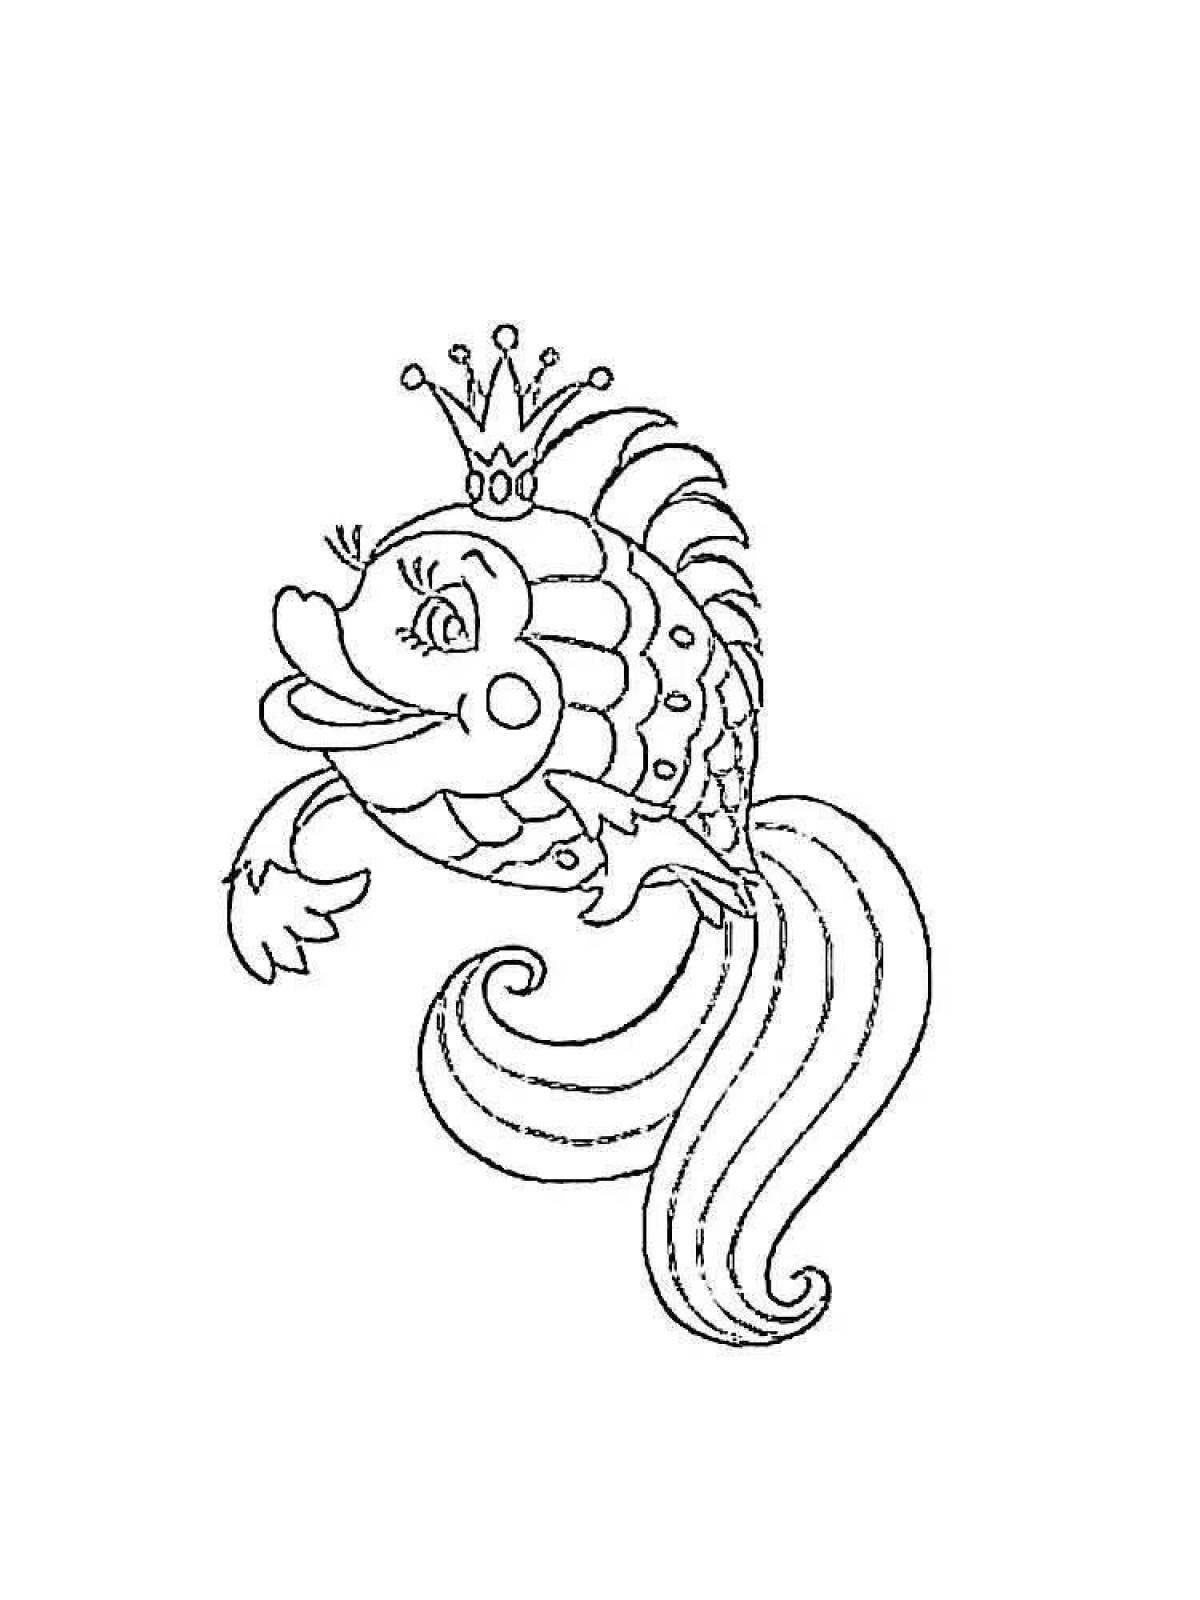 Изящный рисунок золотой рыбки